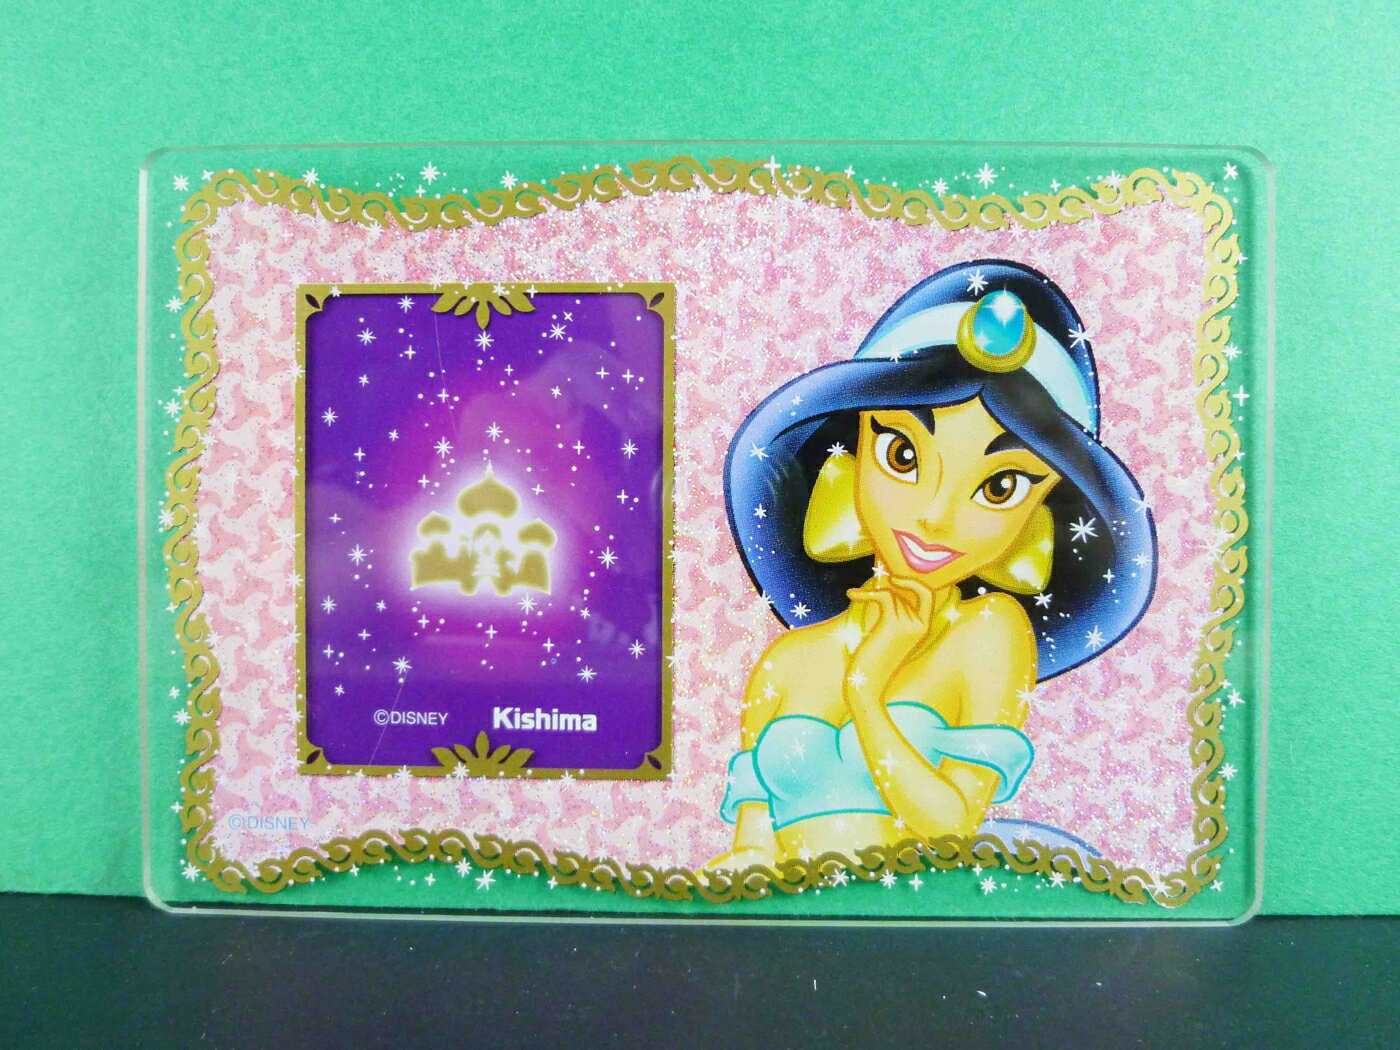 【震撼精品百貨】公主 系列Princess 相框-阿拉丁圖案 震撼日式精品百貨